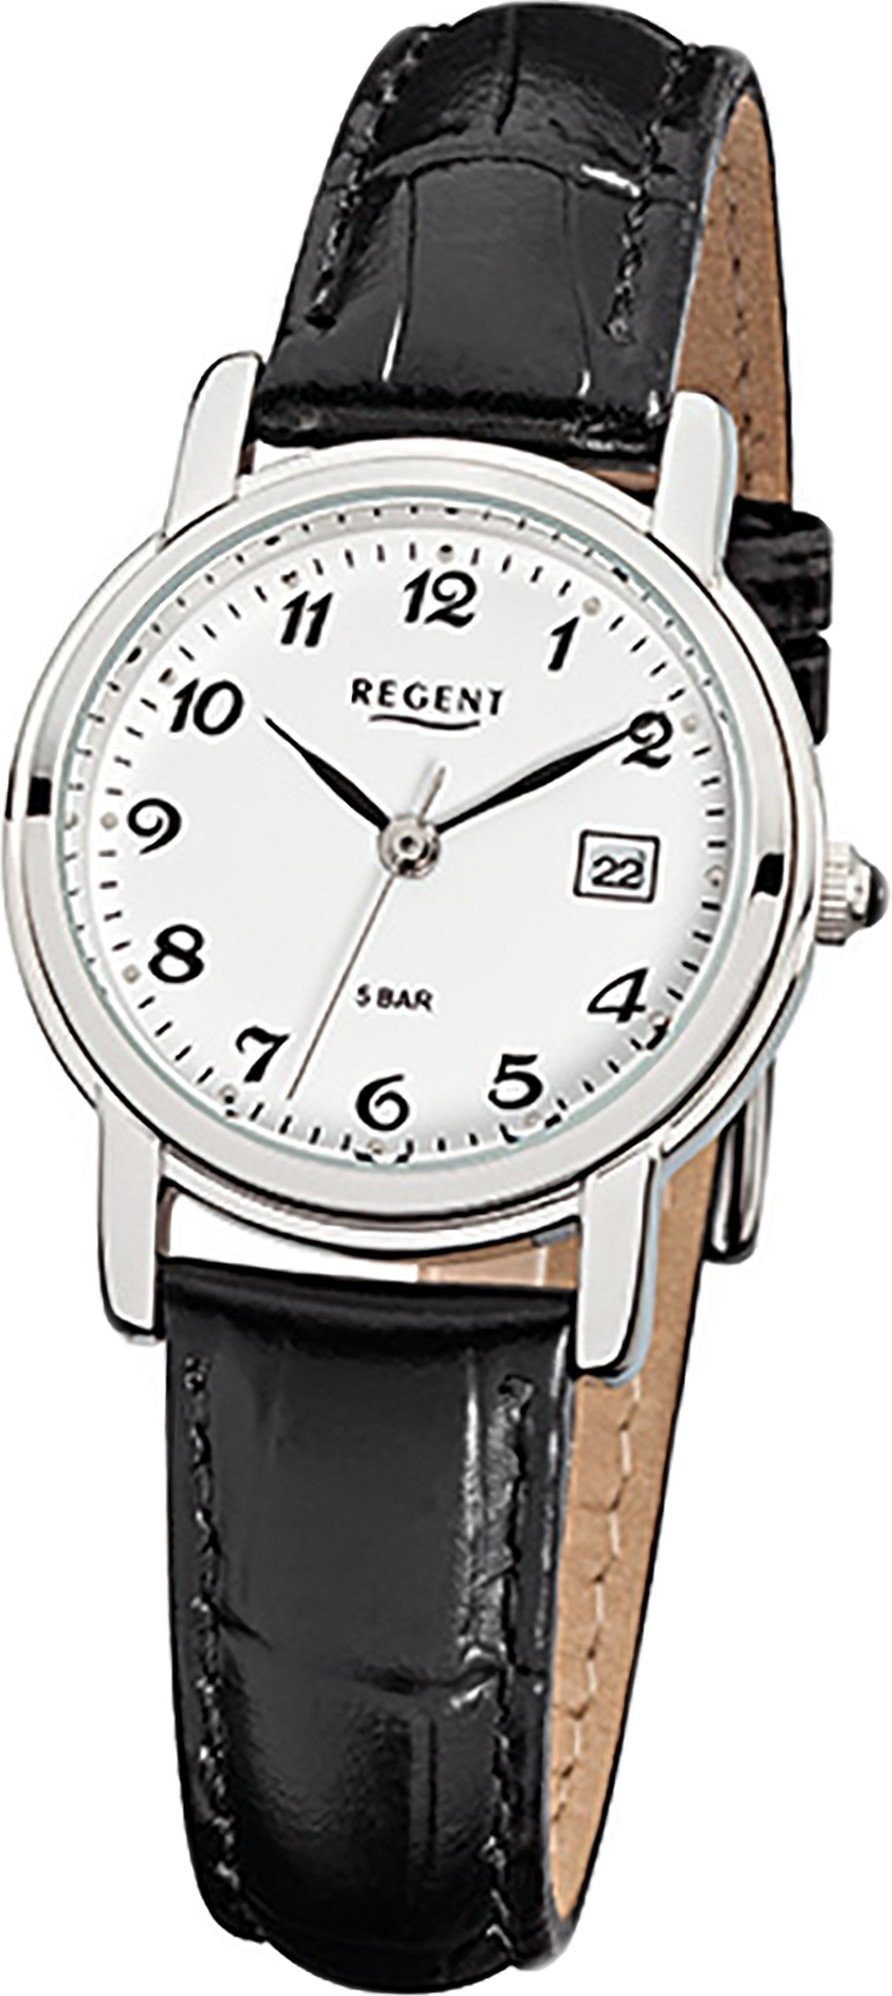 Regent Quarzuhr Regent Leder Damen Uhr F-572 Quarzuhr, Damenuhr Lederarmband schwarz, rundes Gehäuse, klein (ca. 28mm)